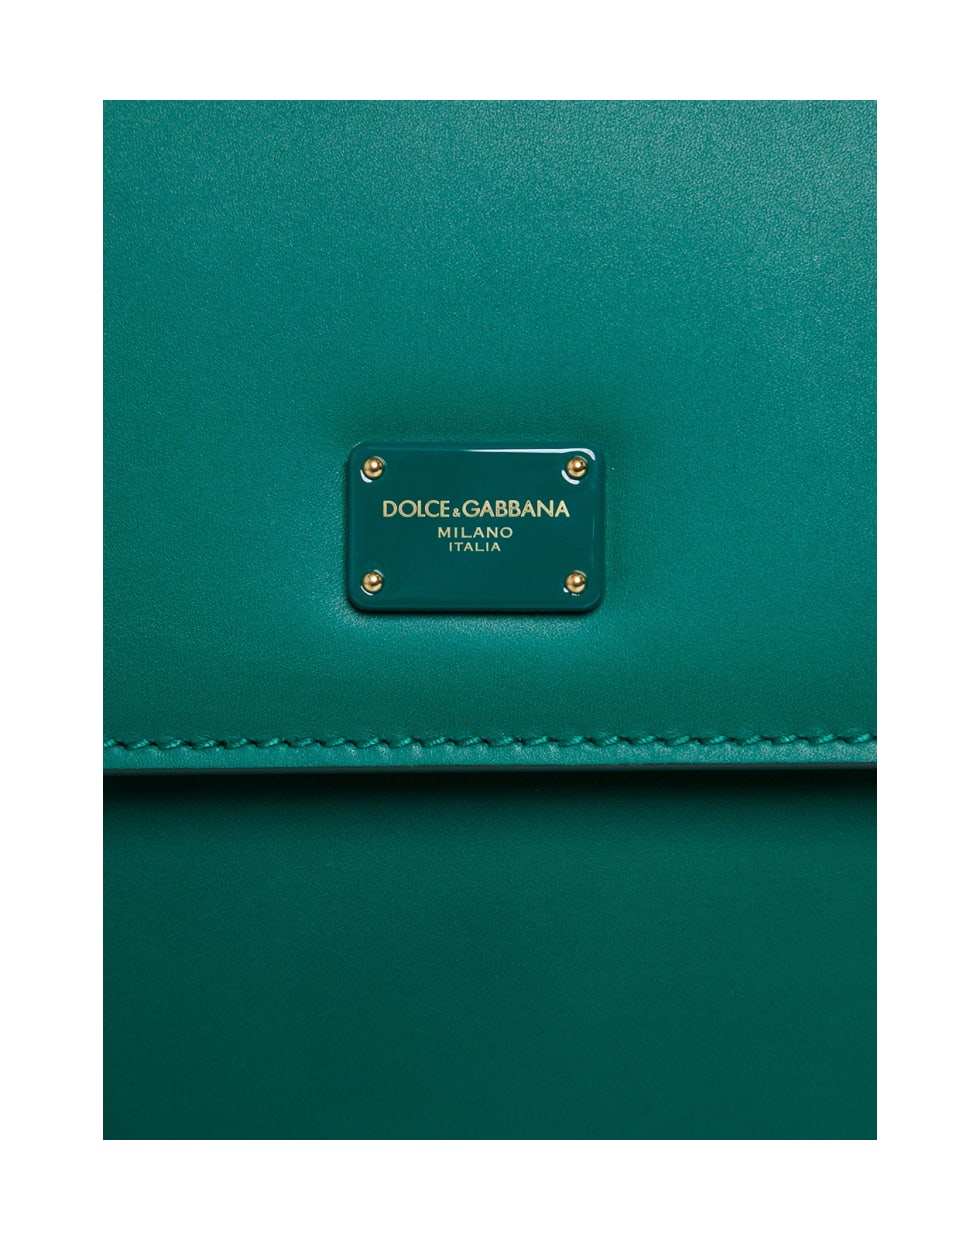 Dolce & Gabbana Sicliy  Green Leather Handbag - Green